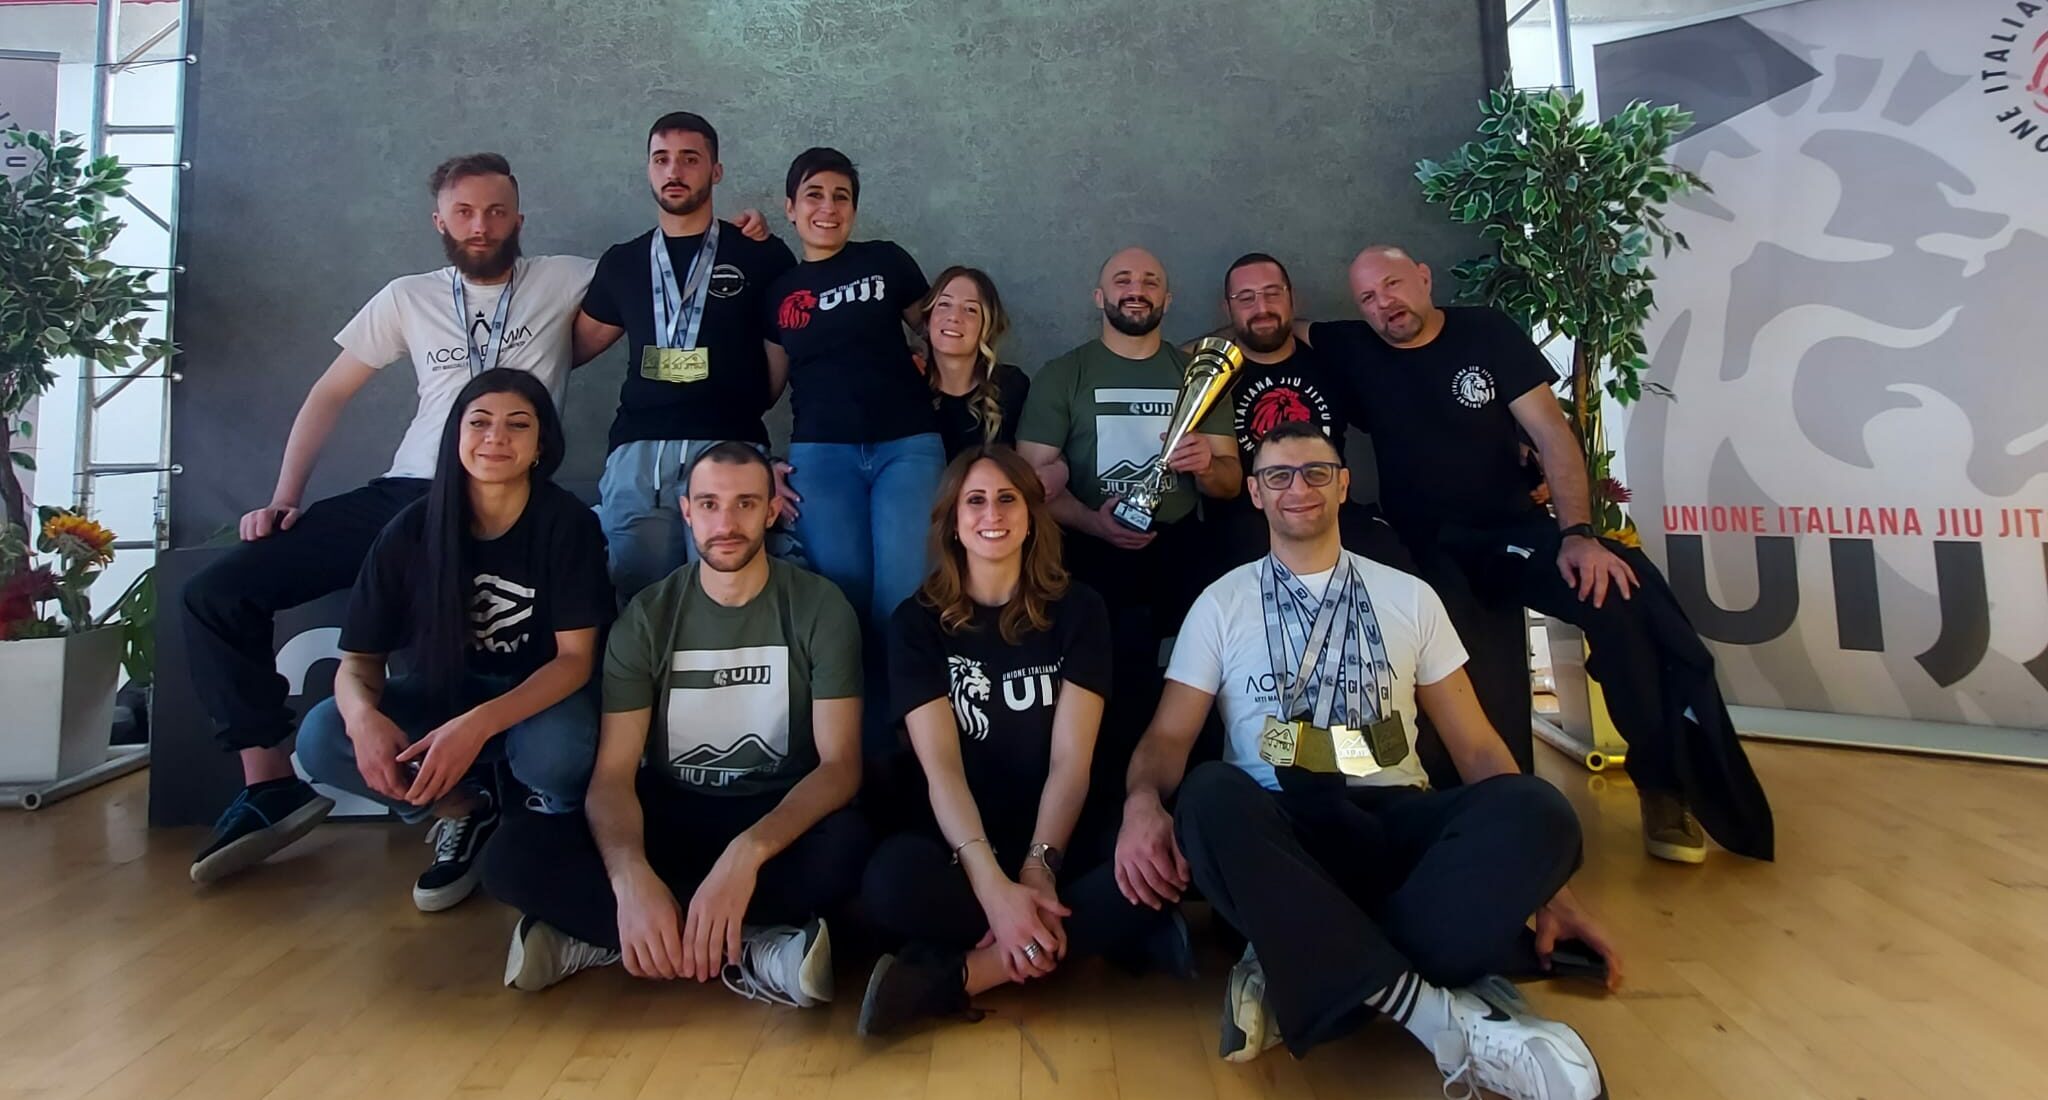 Budo Clan Basilicata miglior team al Napoli Jiu Jitsu challenge: 4 ori